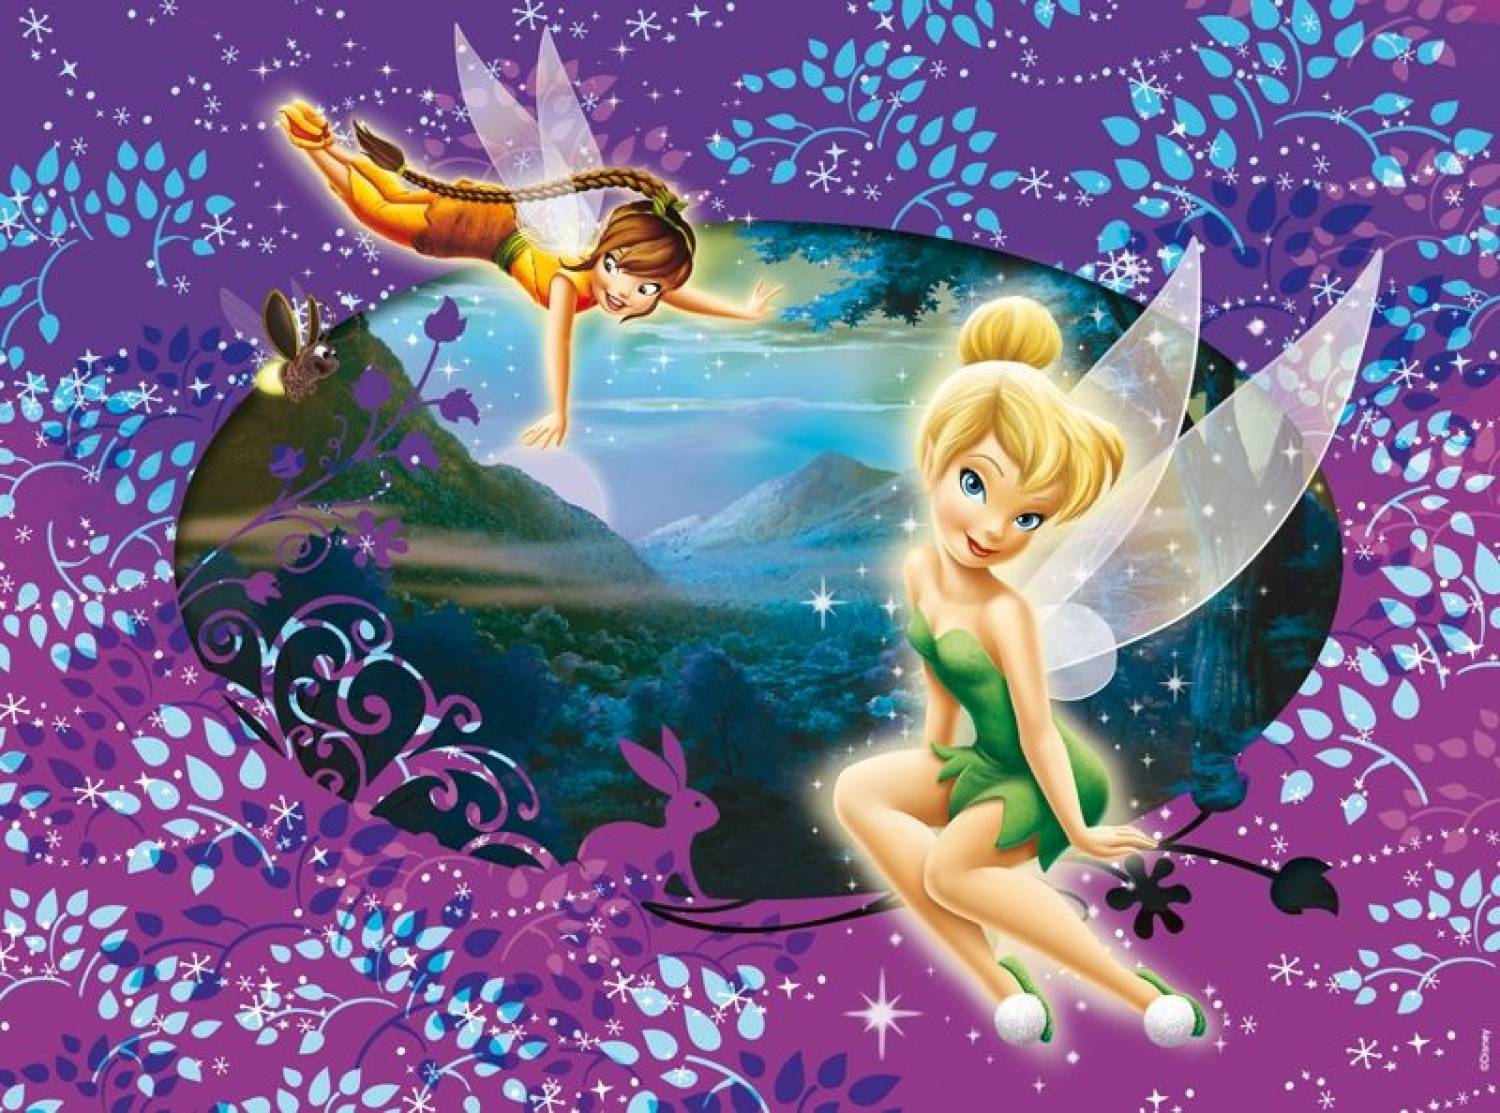 Disney Fairies Wallpaper - WallpaperSafari